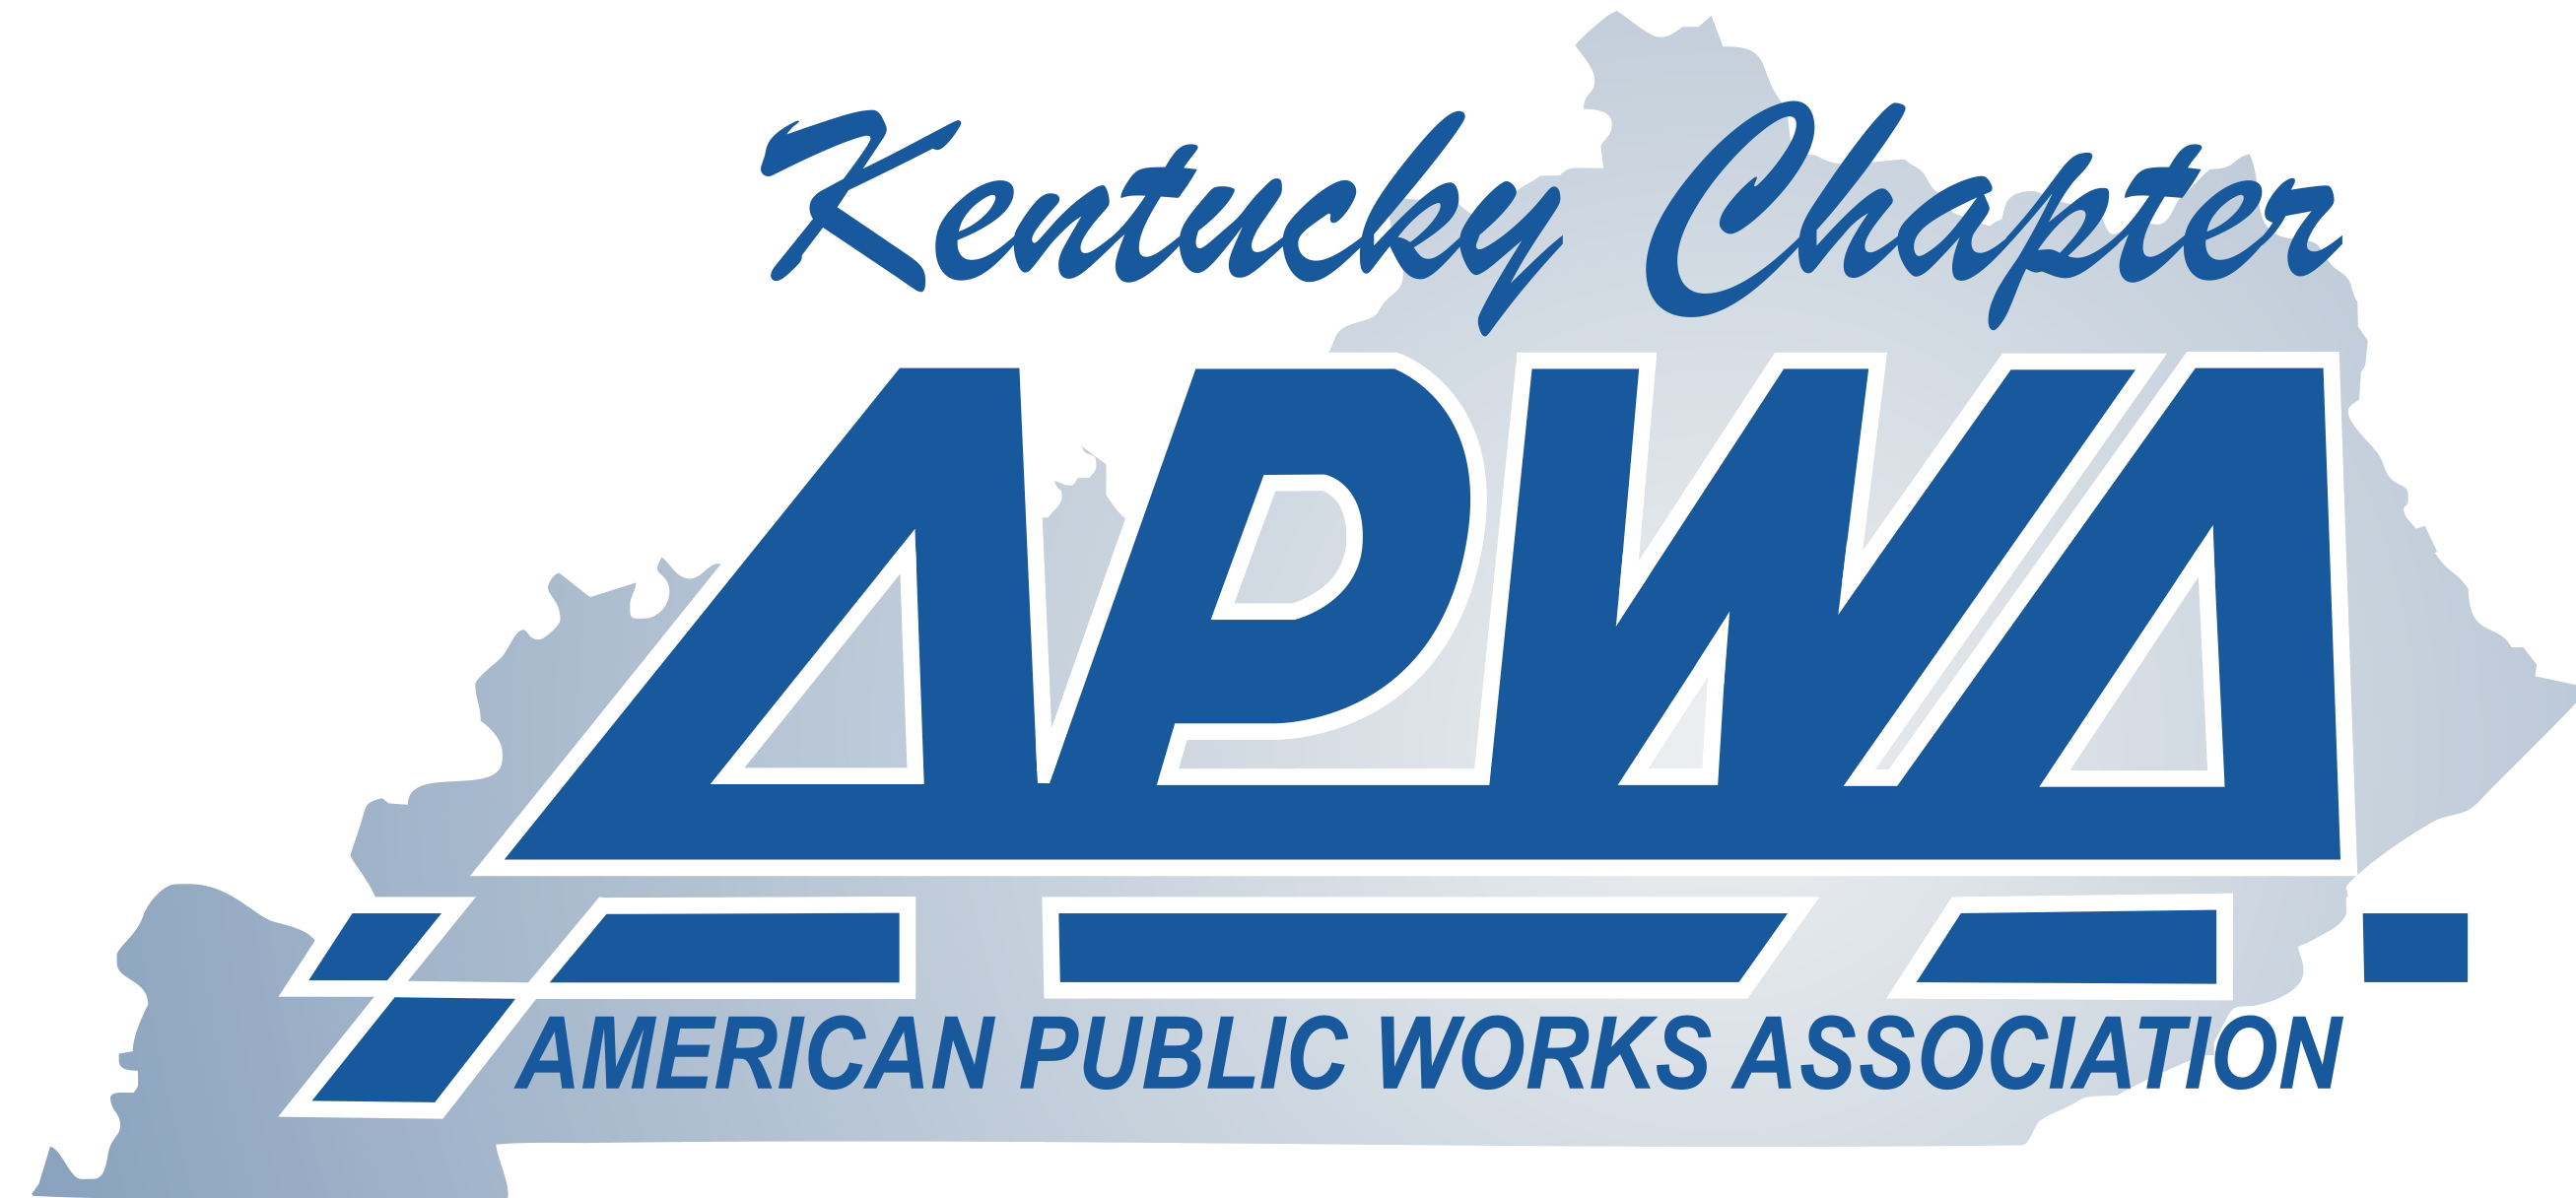 APWA Kentucky Chapter Logo 2021 conference.jpeg